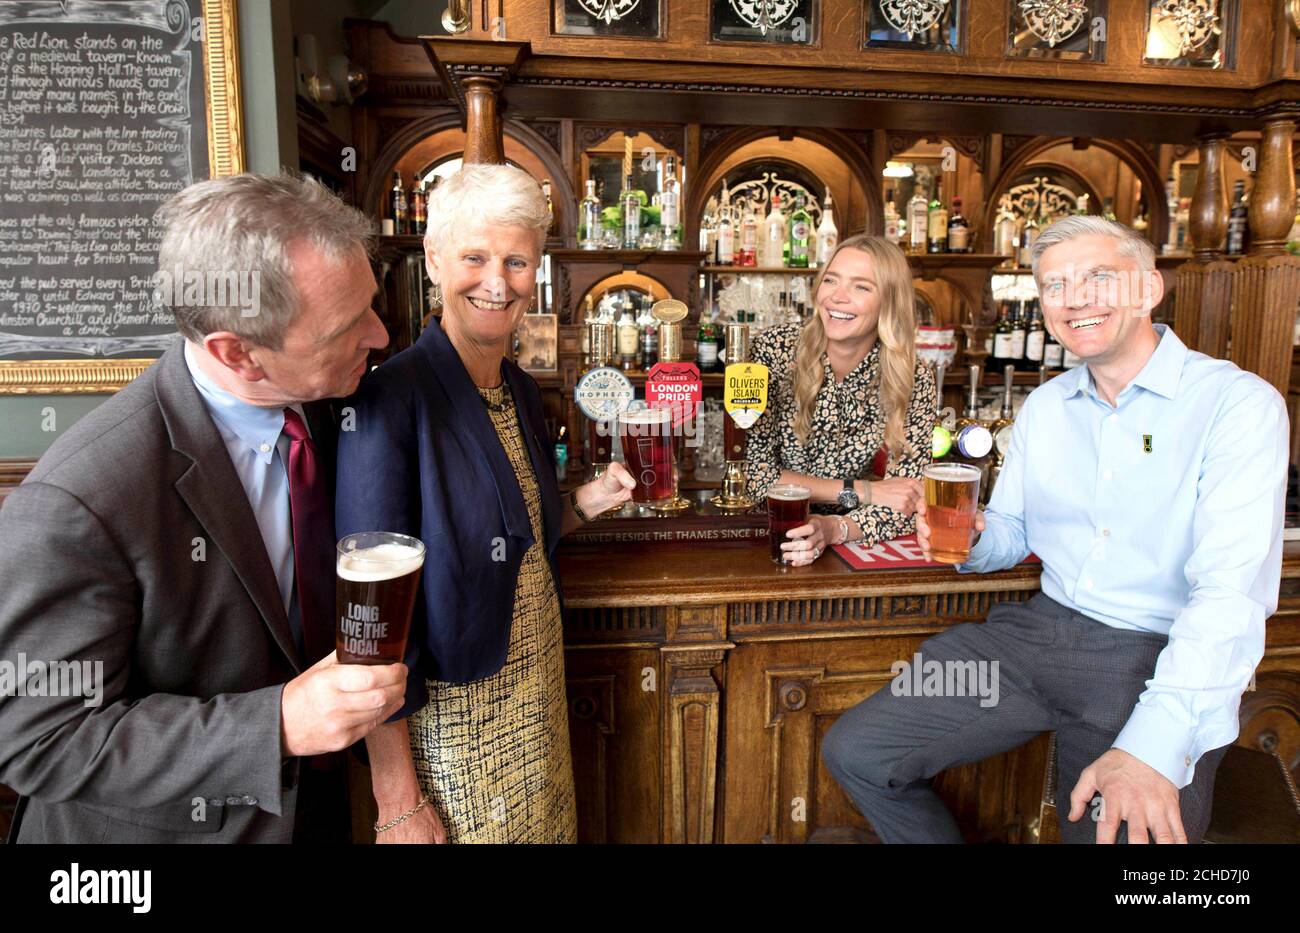 (Von links nach rechts) Nigel Evans MP für Ribble Valley, Brigid Simmonds, CEO der British Beer and Pub Association, Jodie Kidd und David Cunningham, Programmdirektor der britischen Beer Alliance, kündigen „Long Live The Local“ an, Eine landesweite Kampagne, die von der britischen Beer Alliance unterstützt wird und die die Regierung auffordert, die verheerend hohen Biersteuern zu senken, um dazu beizutragen, britische Pubs offen zu halten, wurde vom lokalen Kanzler, dem Roten Löwen in Westminster, London, gestartet. Stockfoto